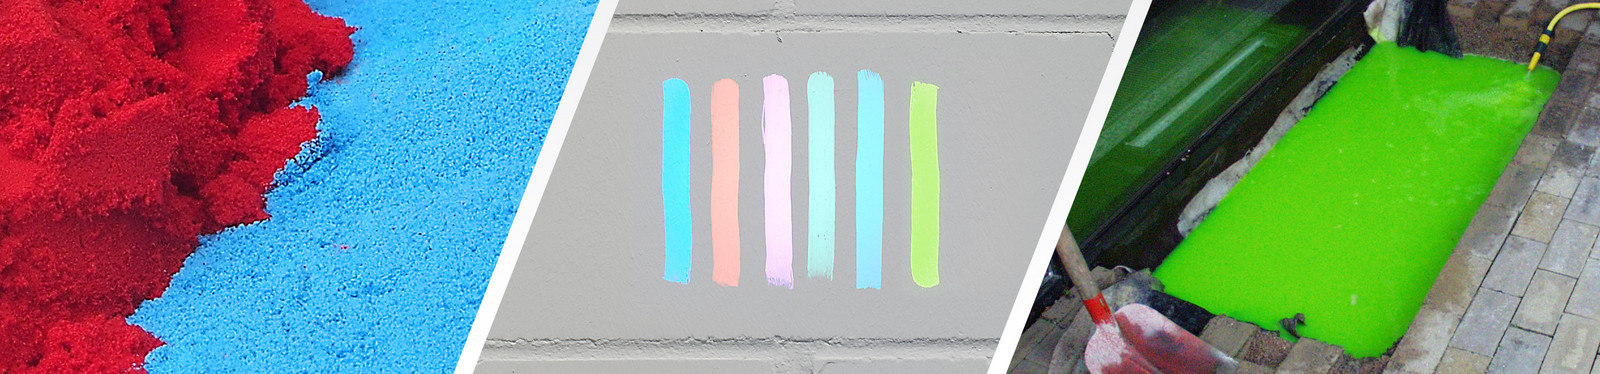 Pintura y colorantes fluorescentes como trazadores para la localización de fugas, la comprobación de conexiones o la visualización de canales de flujo